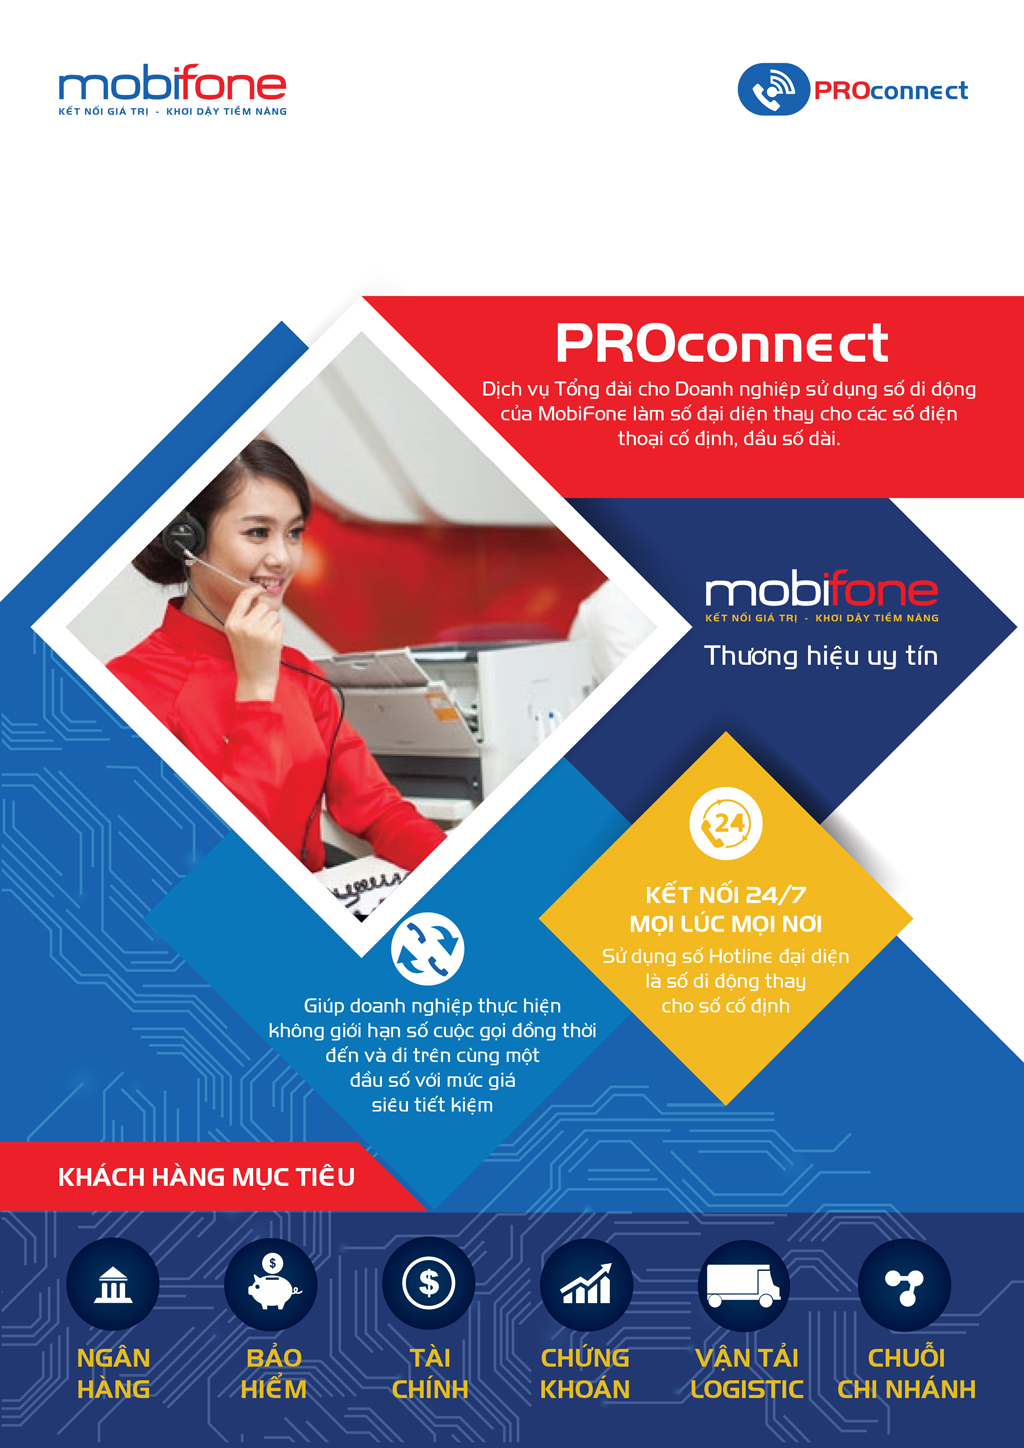 ProConnect đem tới chất lượng tốt nhất cho doanh nghiệp